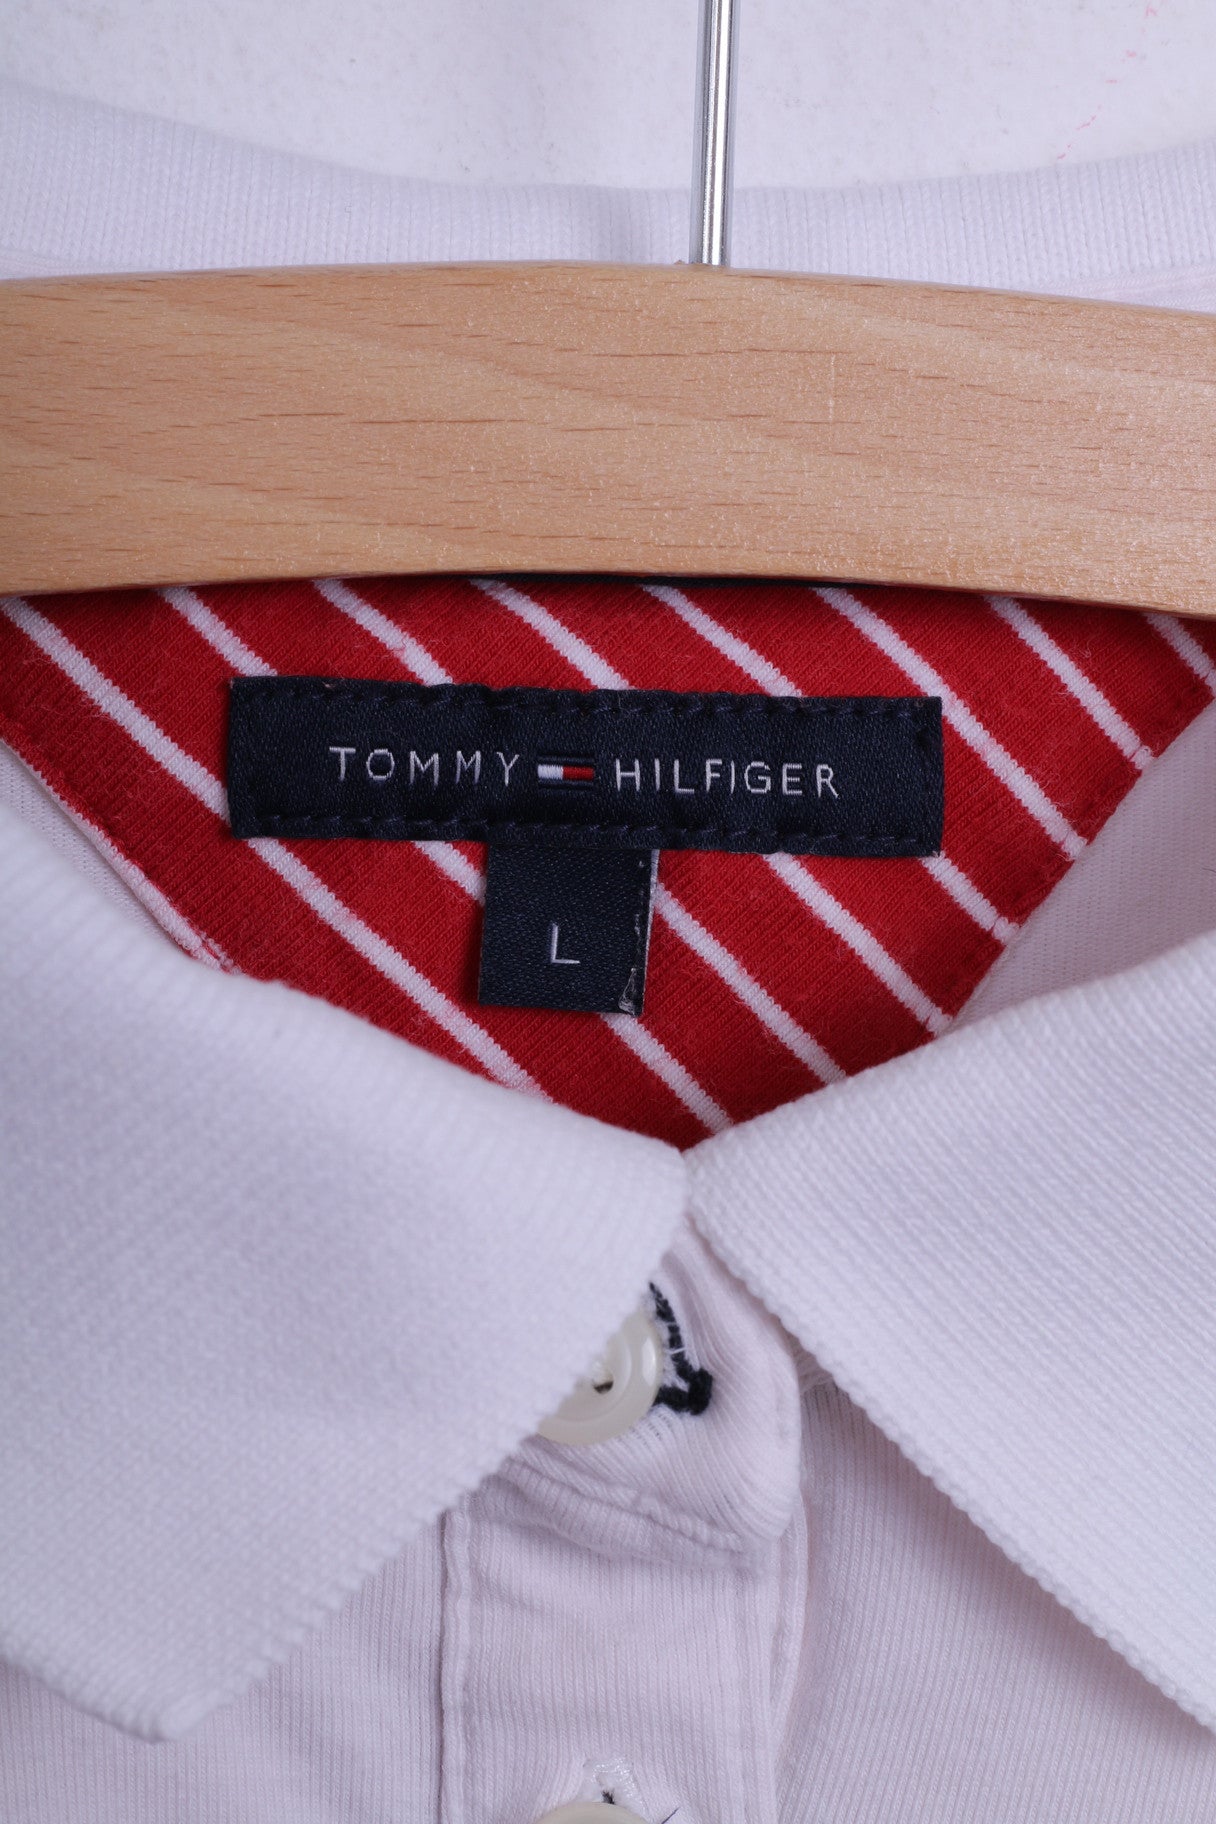 Tommy Hilfiger Polo S pour femme en coton blanc à manches courtes, coupe ajustée